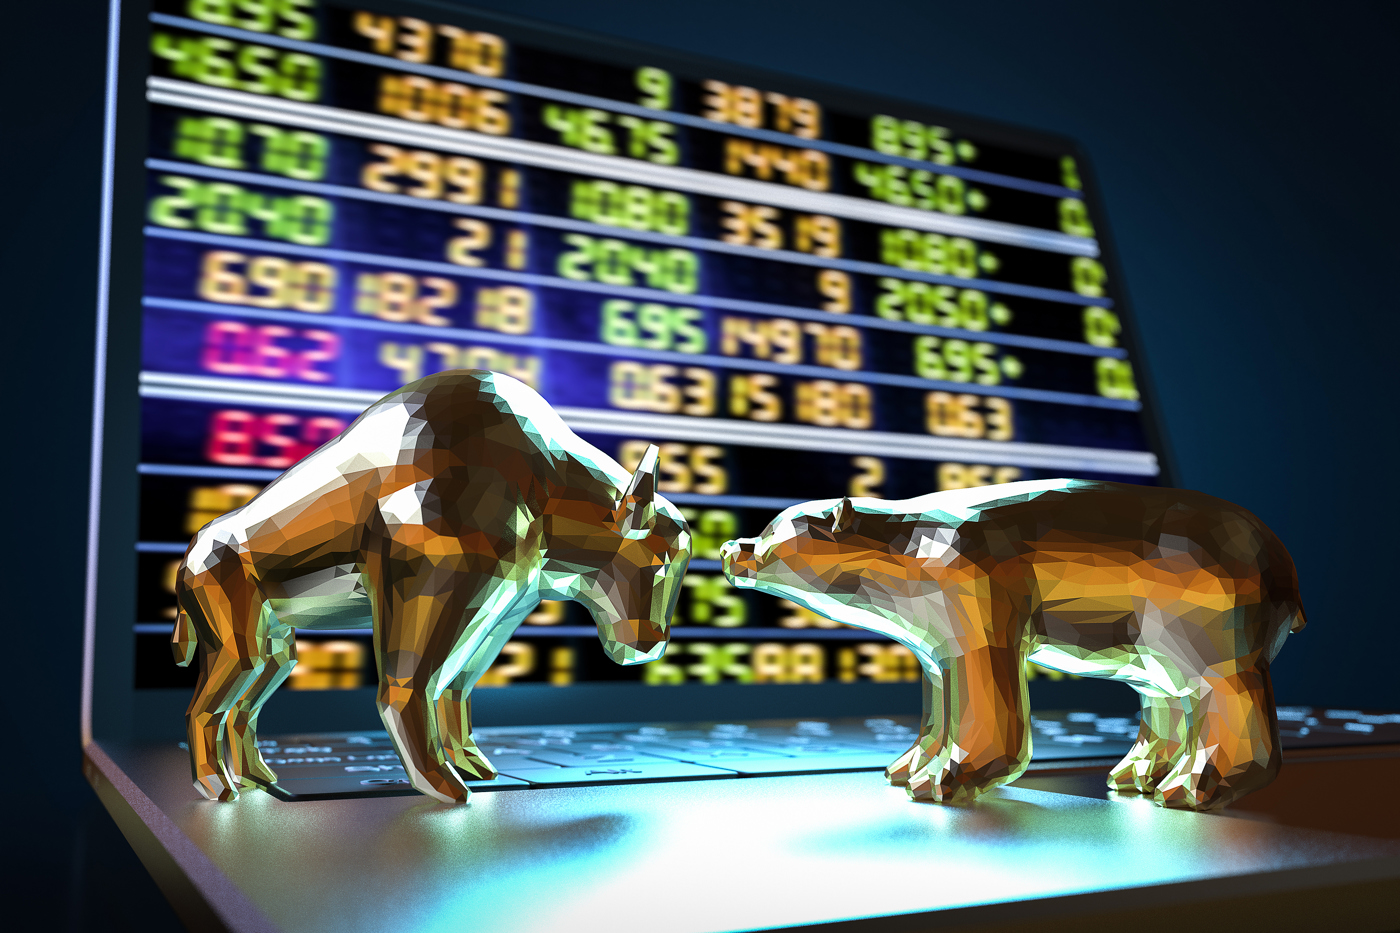 Bull and bear, bullish, bearish, stock market sentiment